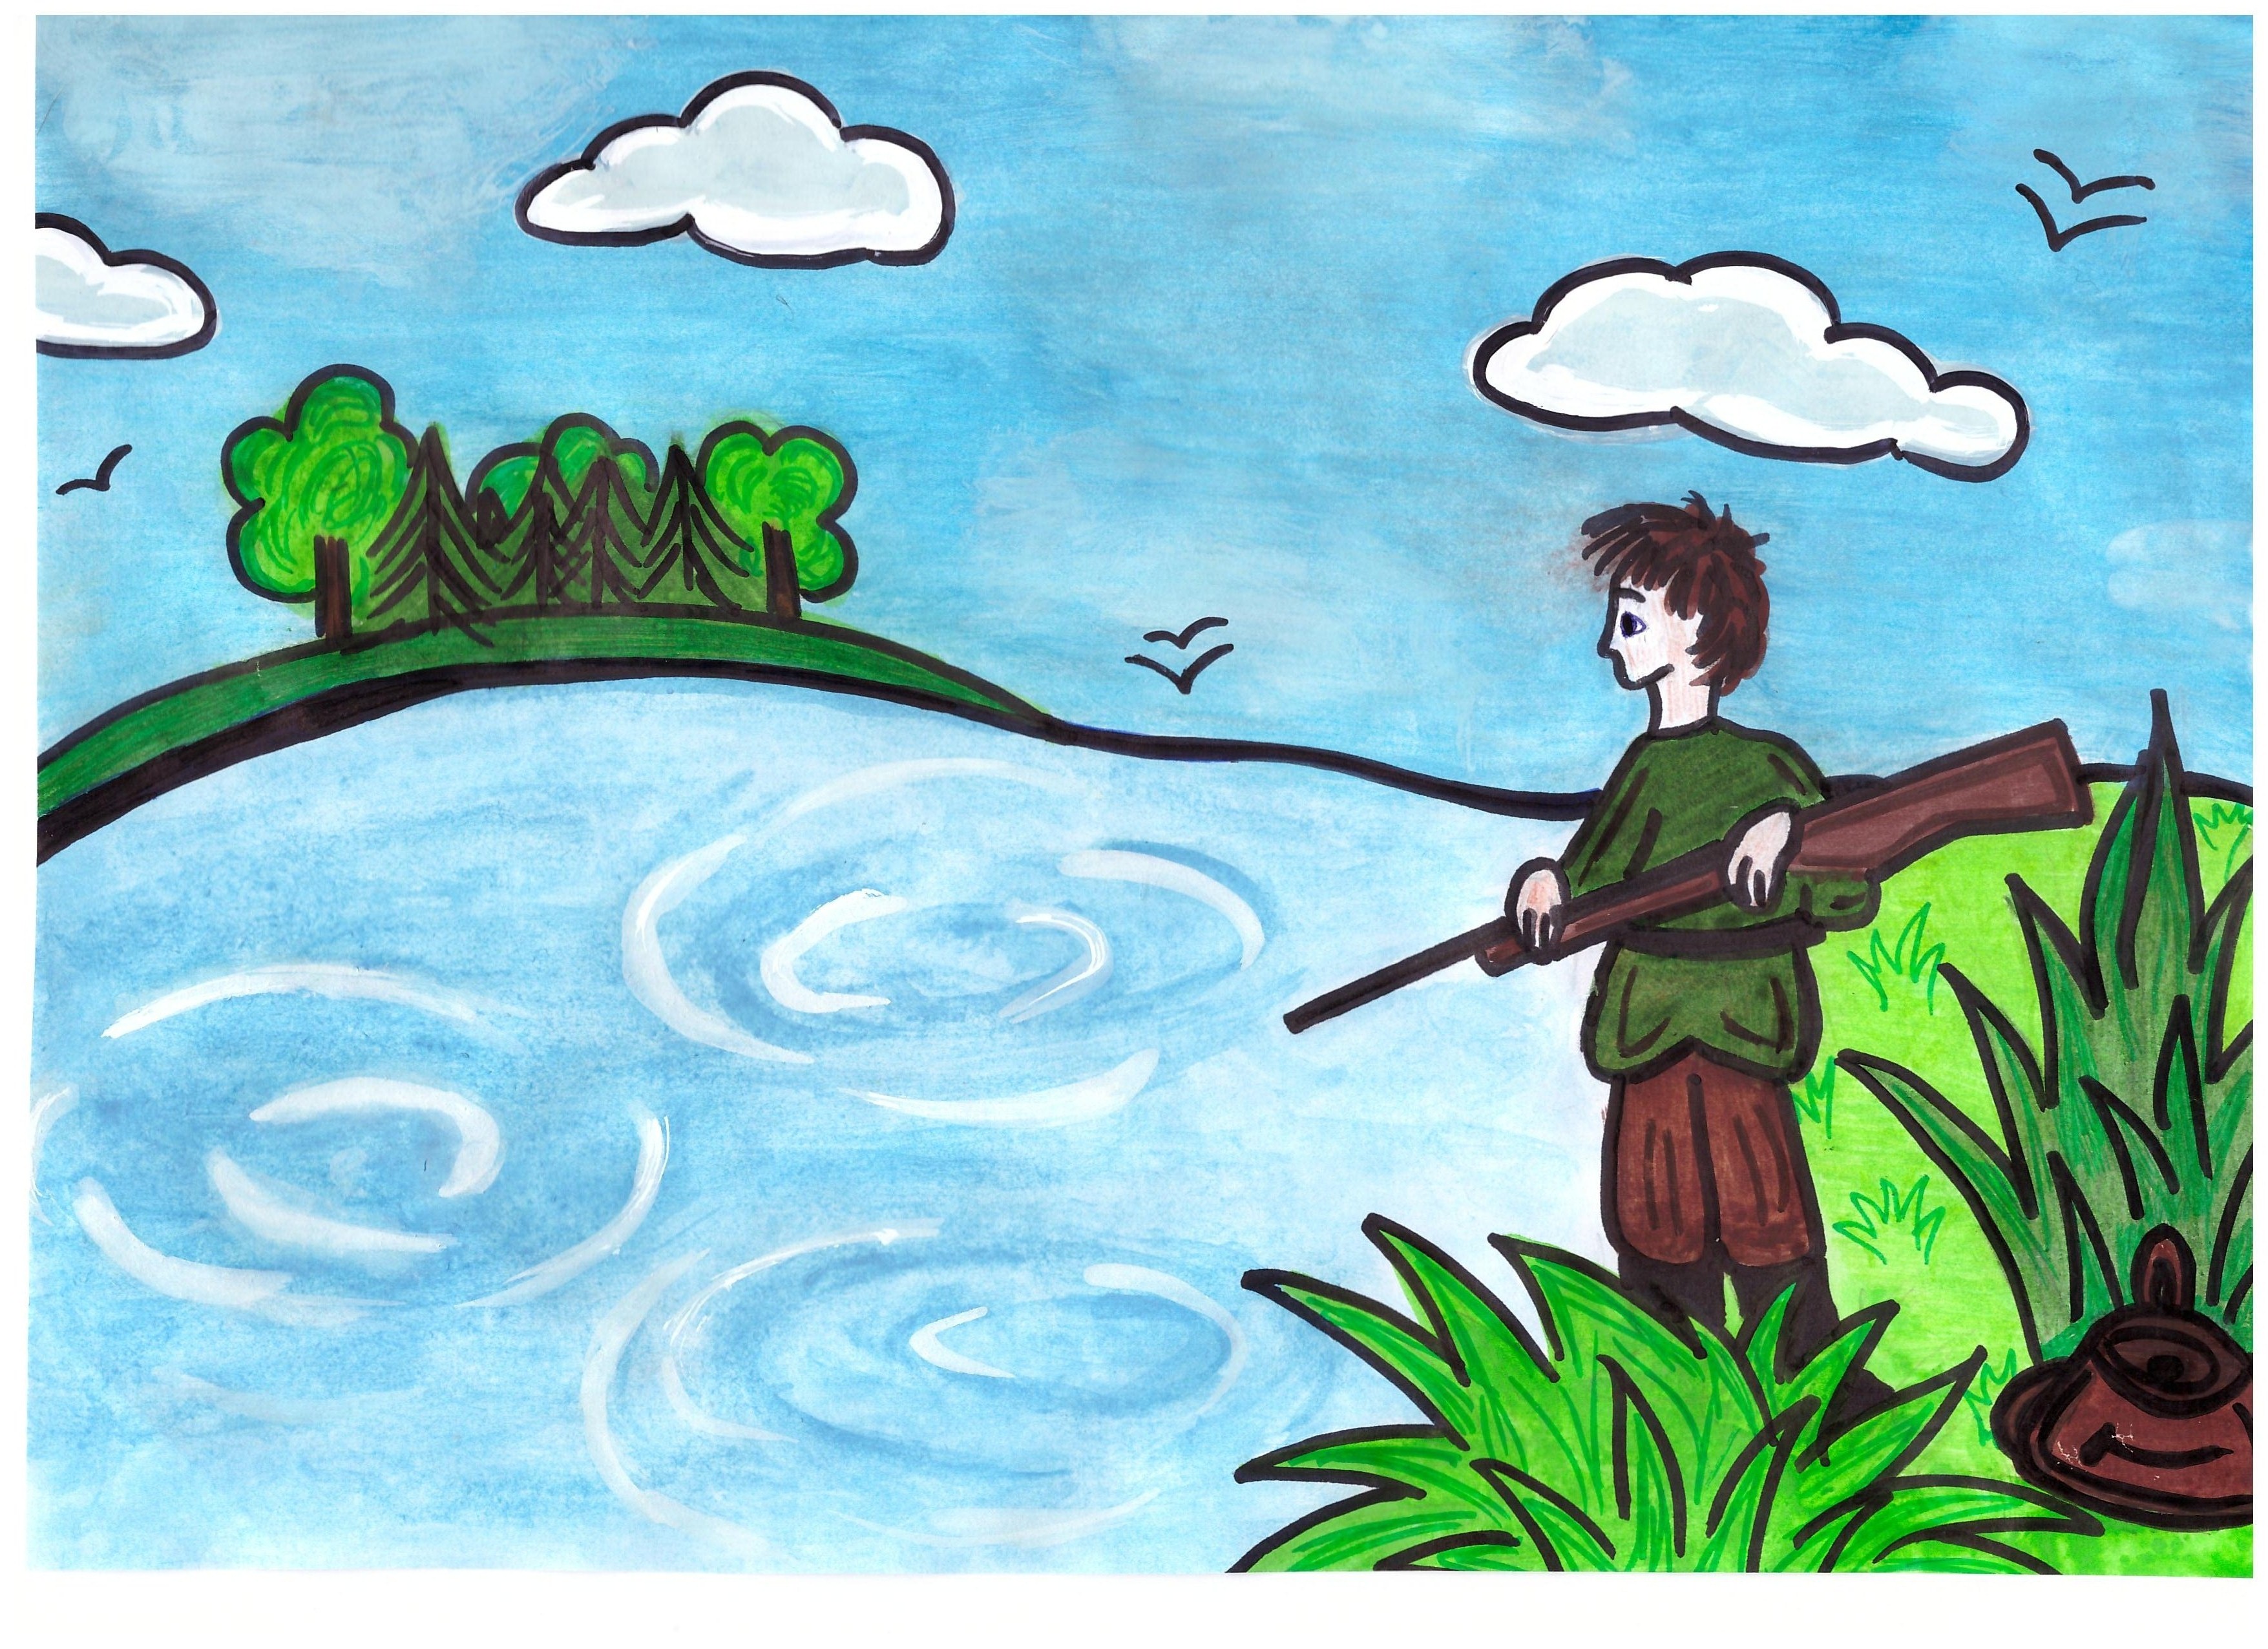 Рисунок к эпизоду васюткино озеро. Астафьев Васюткино озеро иллюстрации. Иллюстрация к рассказу Васюткино озеро рисунок. Ллюстрация к рассказу "Васюткино озеро". Иллюстрации к рассказу Васюткино озеро рисунки детские.